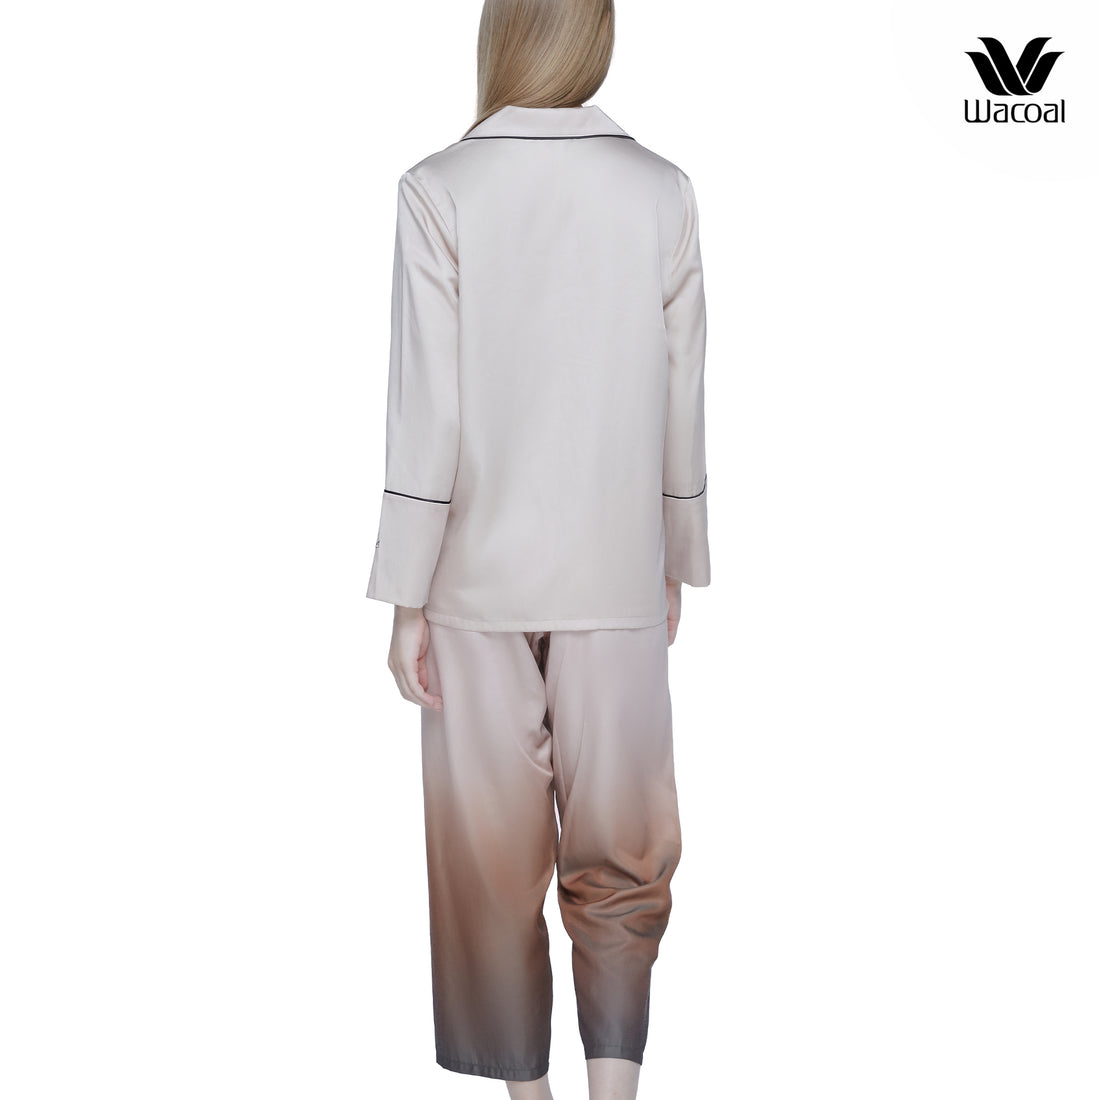 Wacoal Sleepwear ชุดนอนแขนยาว ขายาว ทรงแฟชั่น รุ่น WN7E46 สีเบจ (BE)